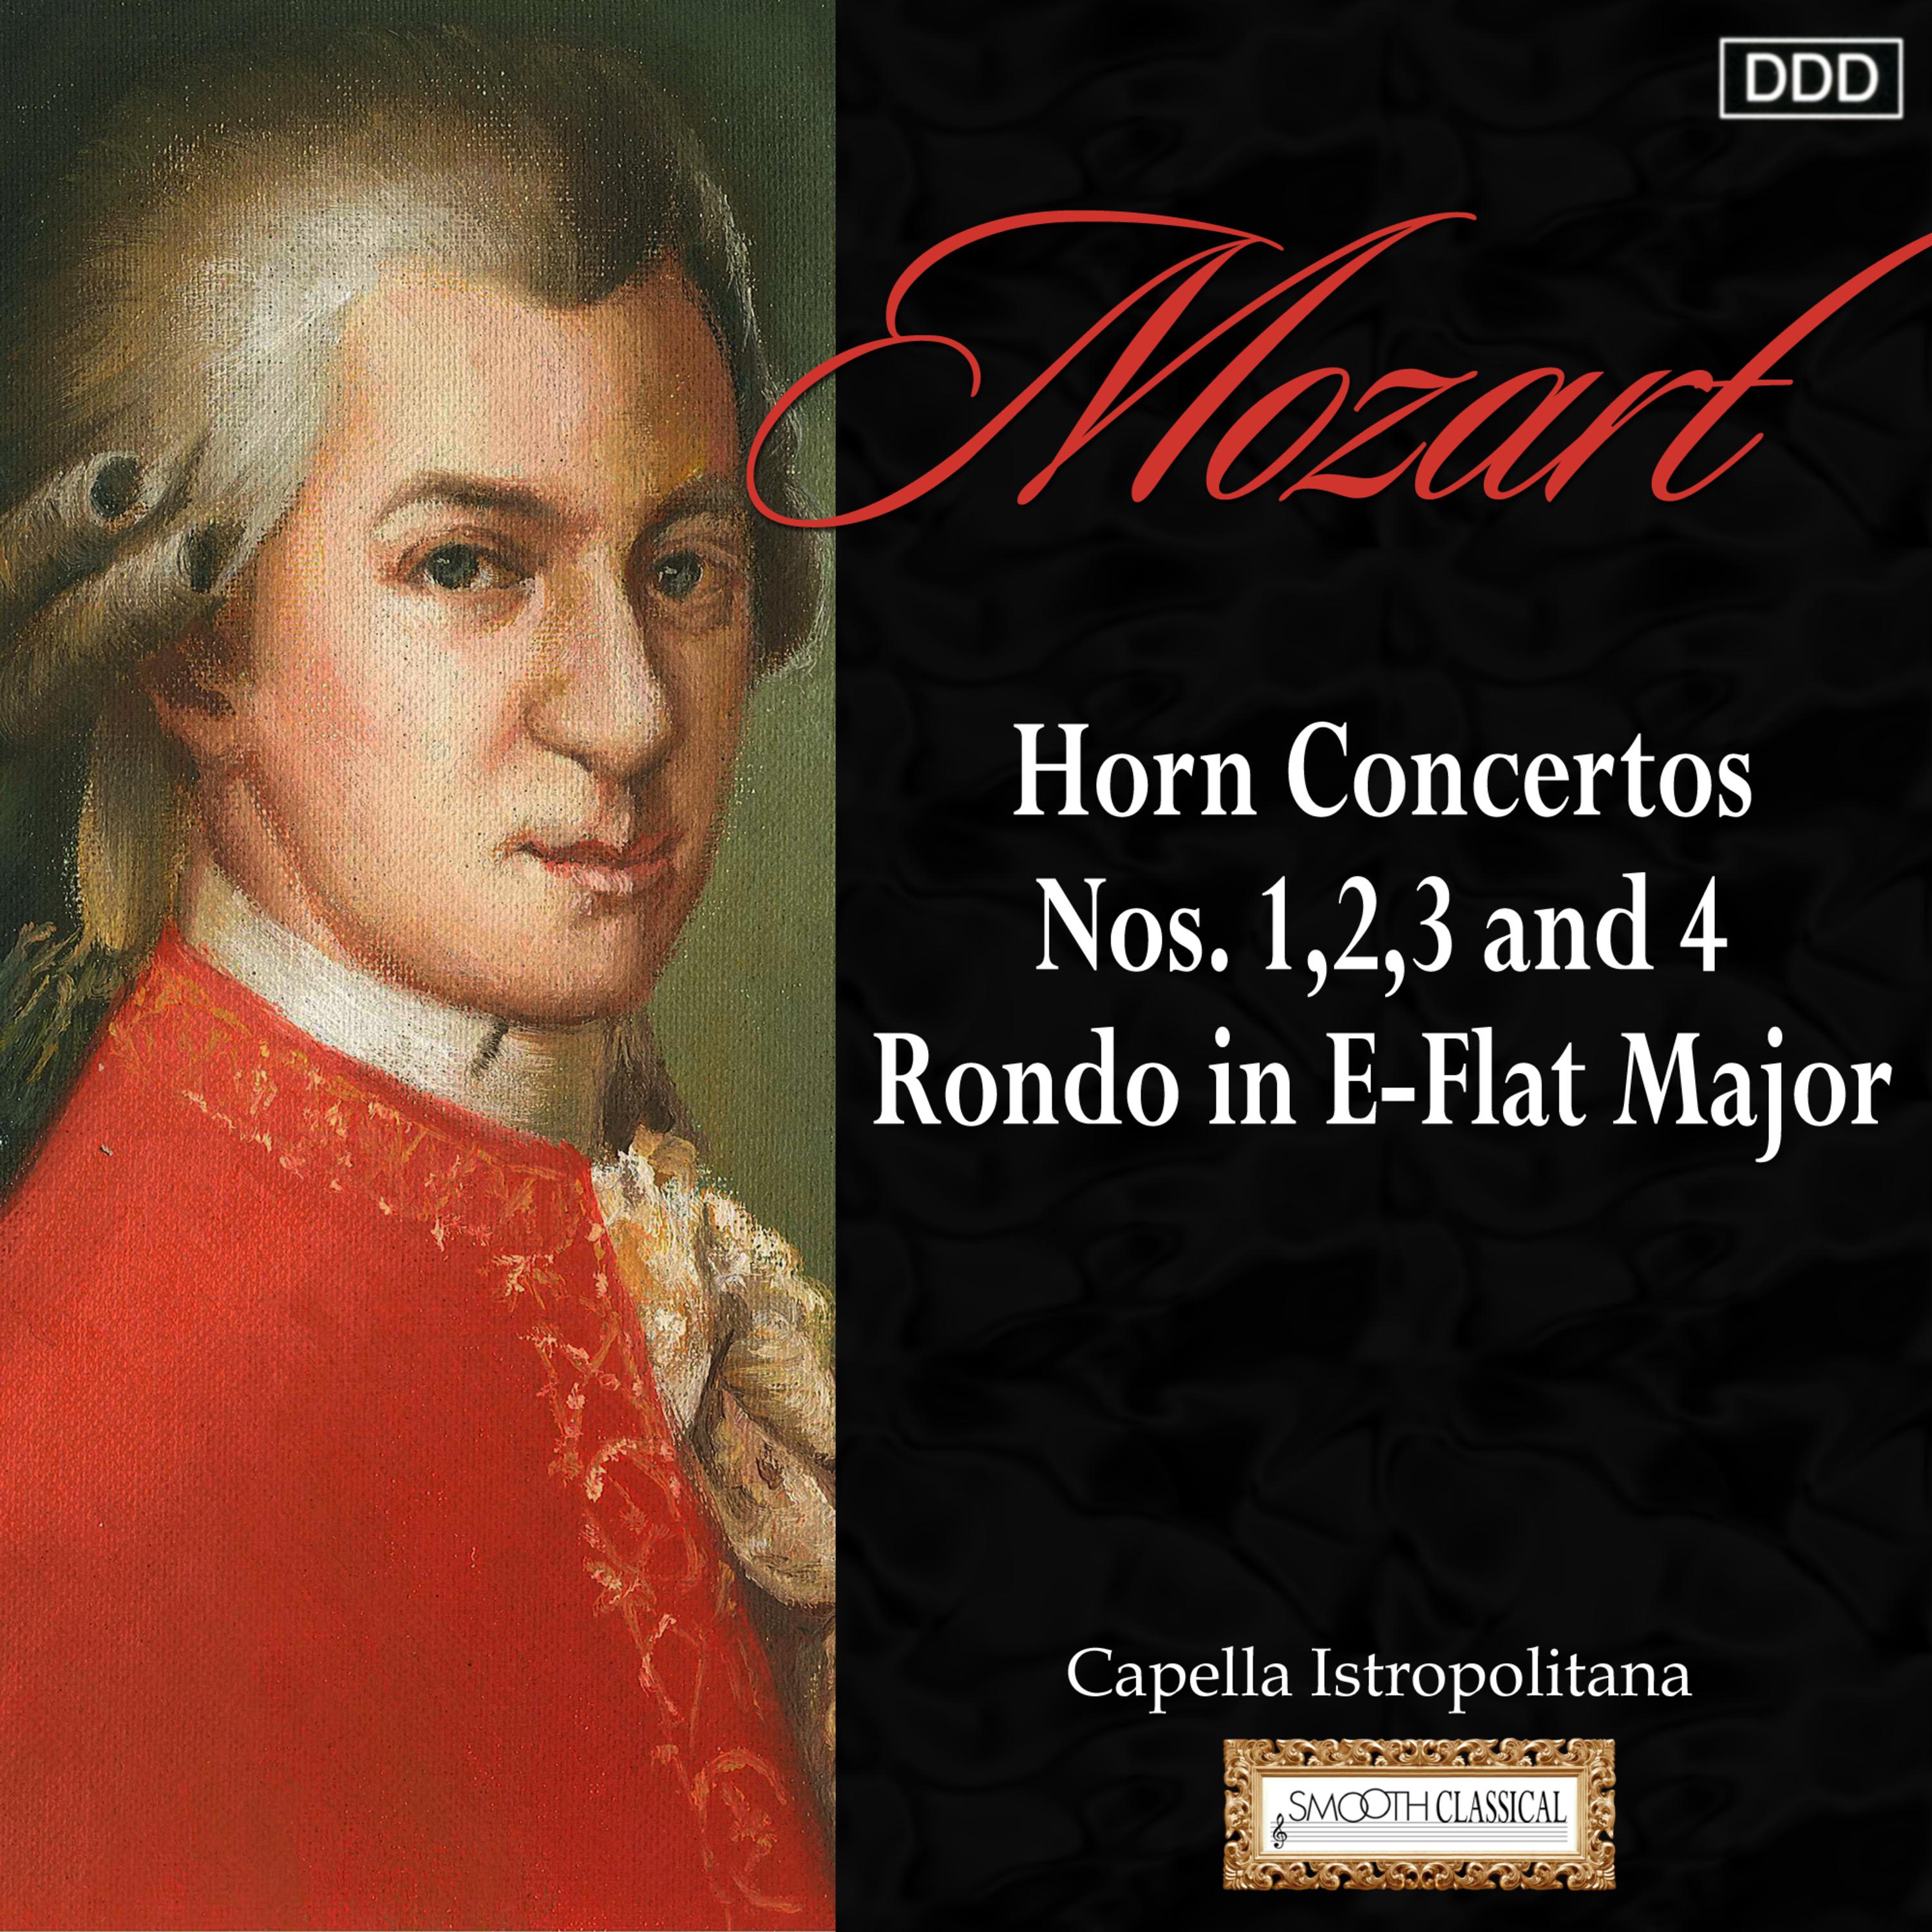 Horn Concerto No. 2 in E-Flat Major, K. 417: III. Rondo: Allegro